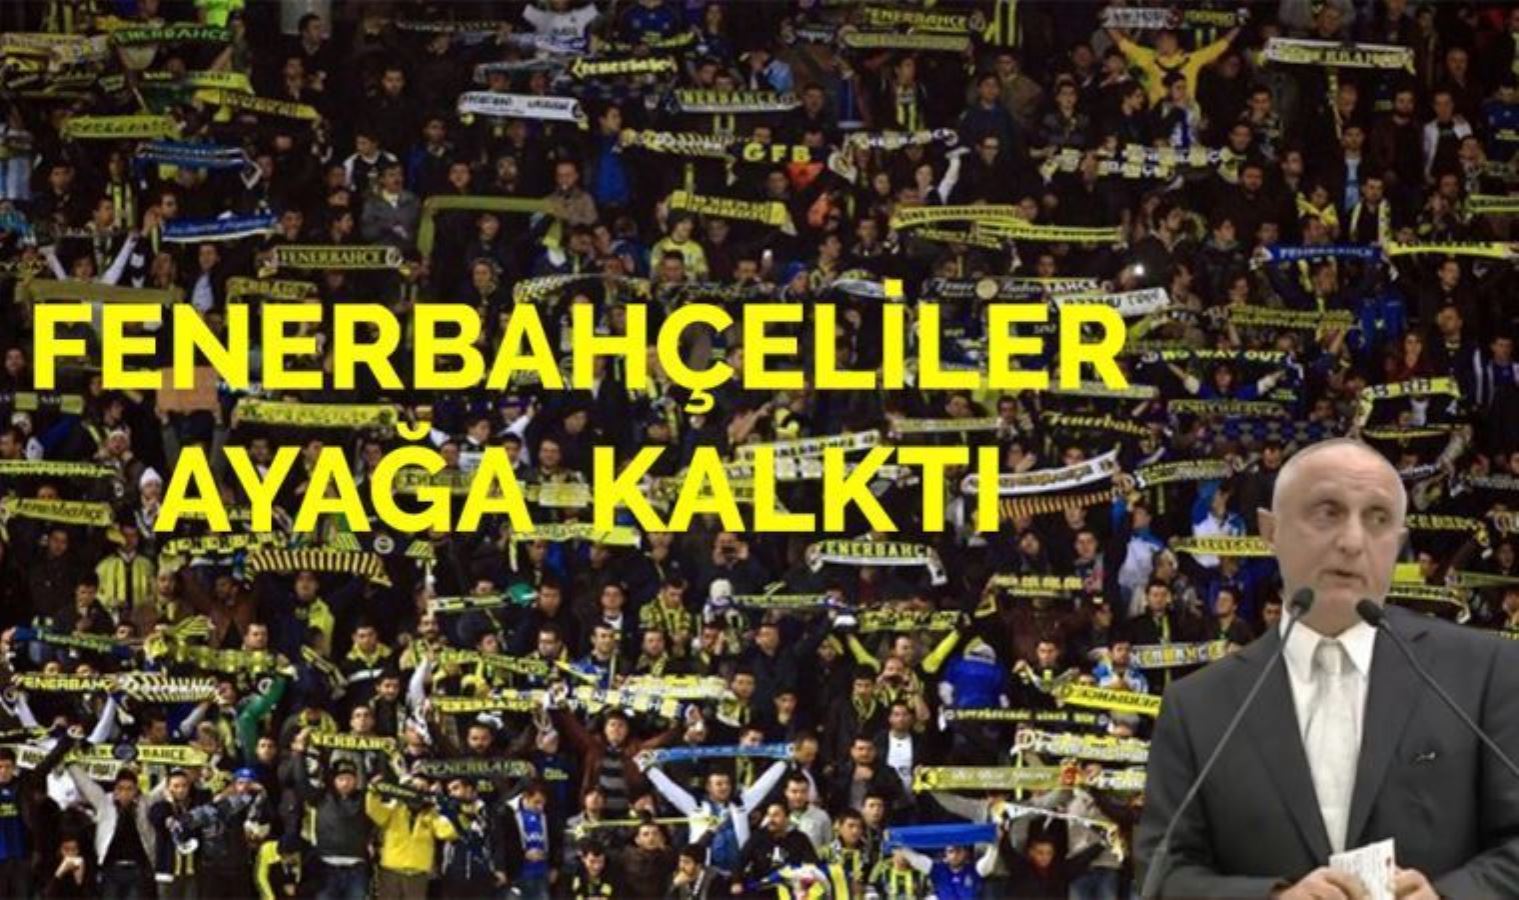 Fenerbahçeli Sait Yılmaz'dan, "tam destek" açıklaması